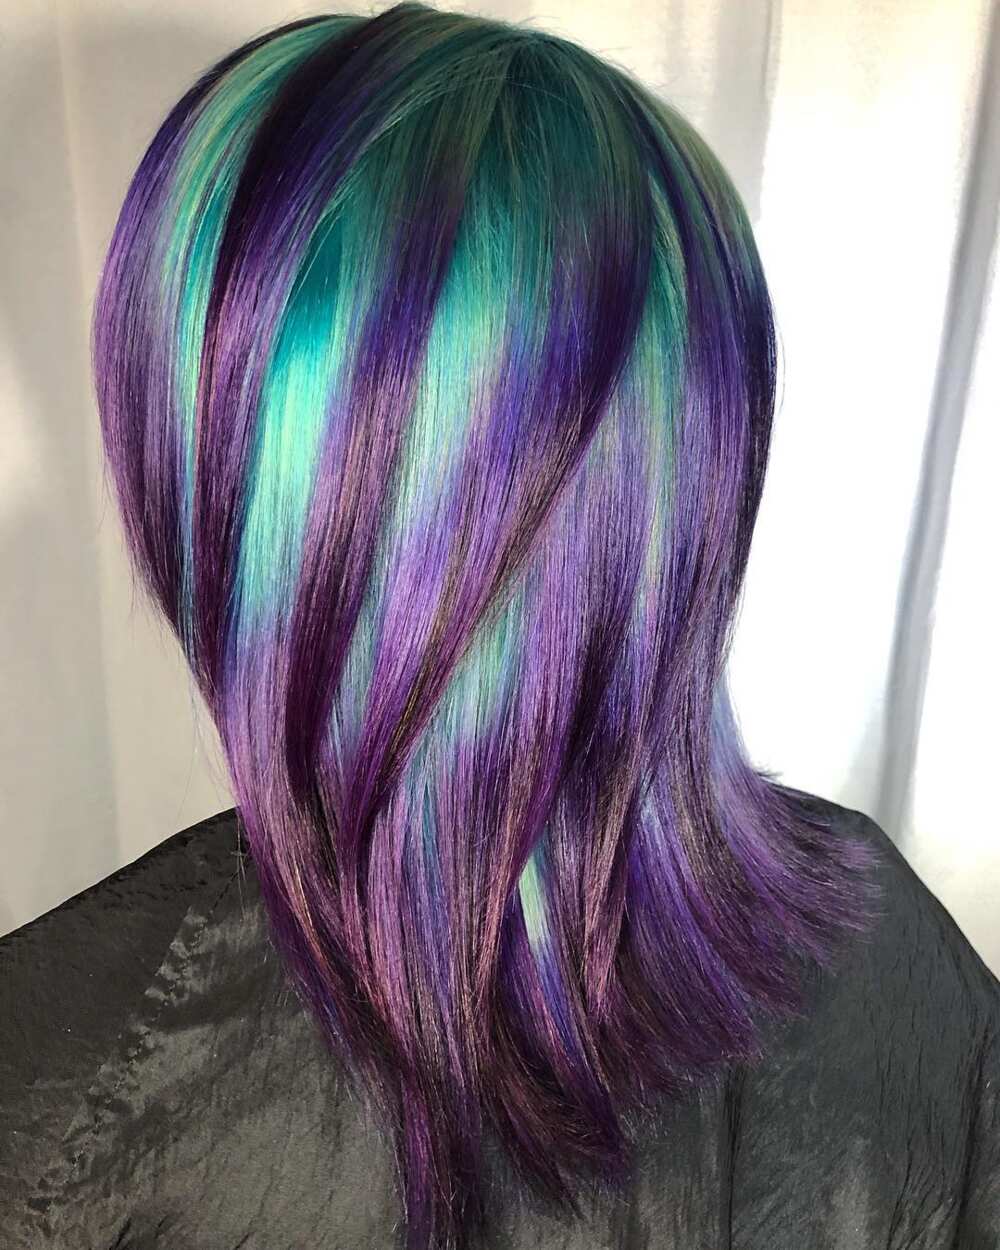 Galaxy coloured hair